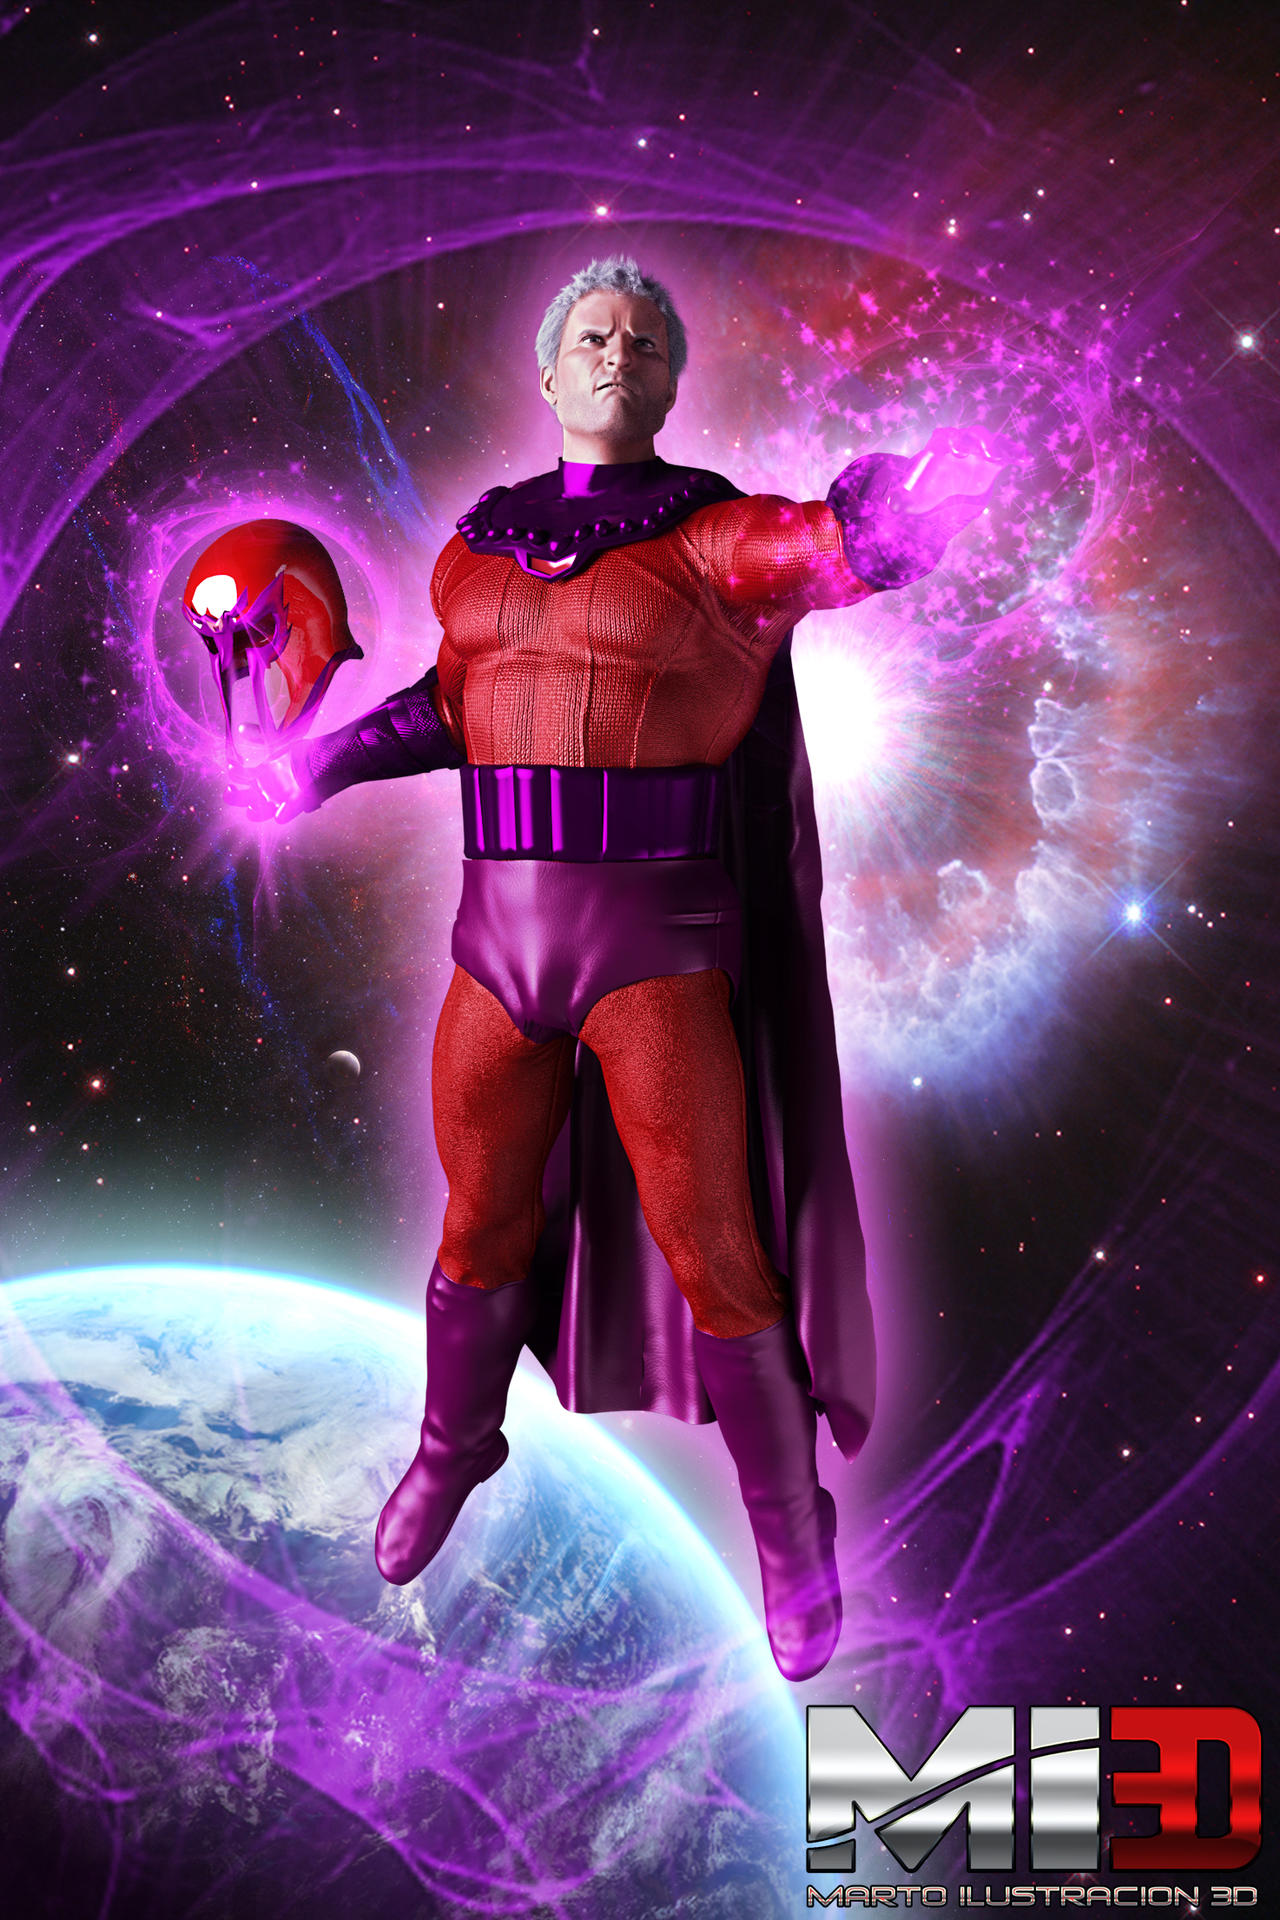 Magneto (after Jim Lee) by Vadlor on DeviantArt